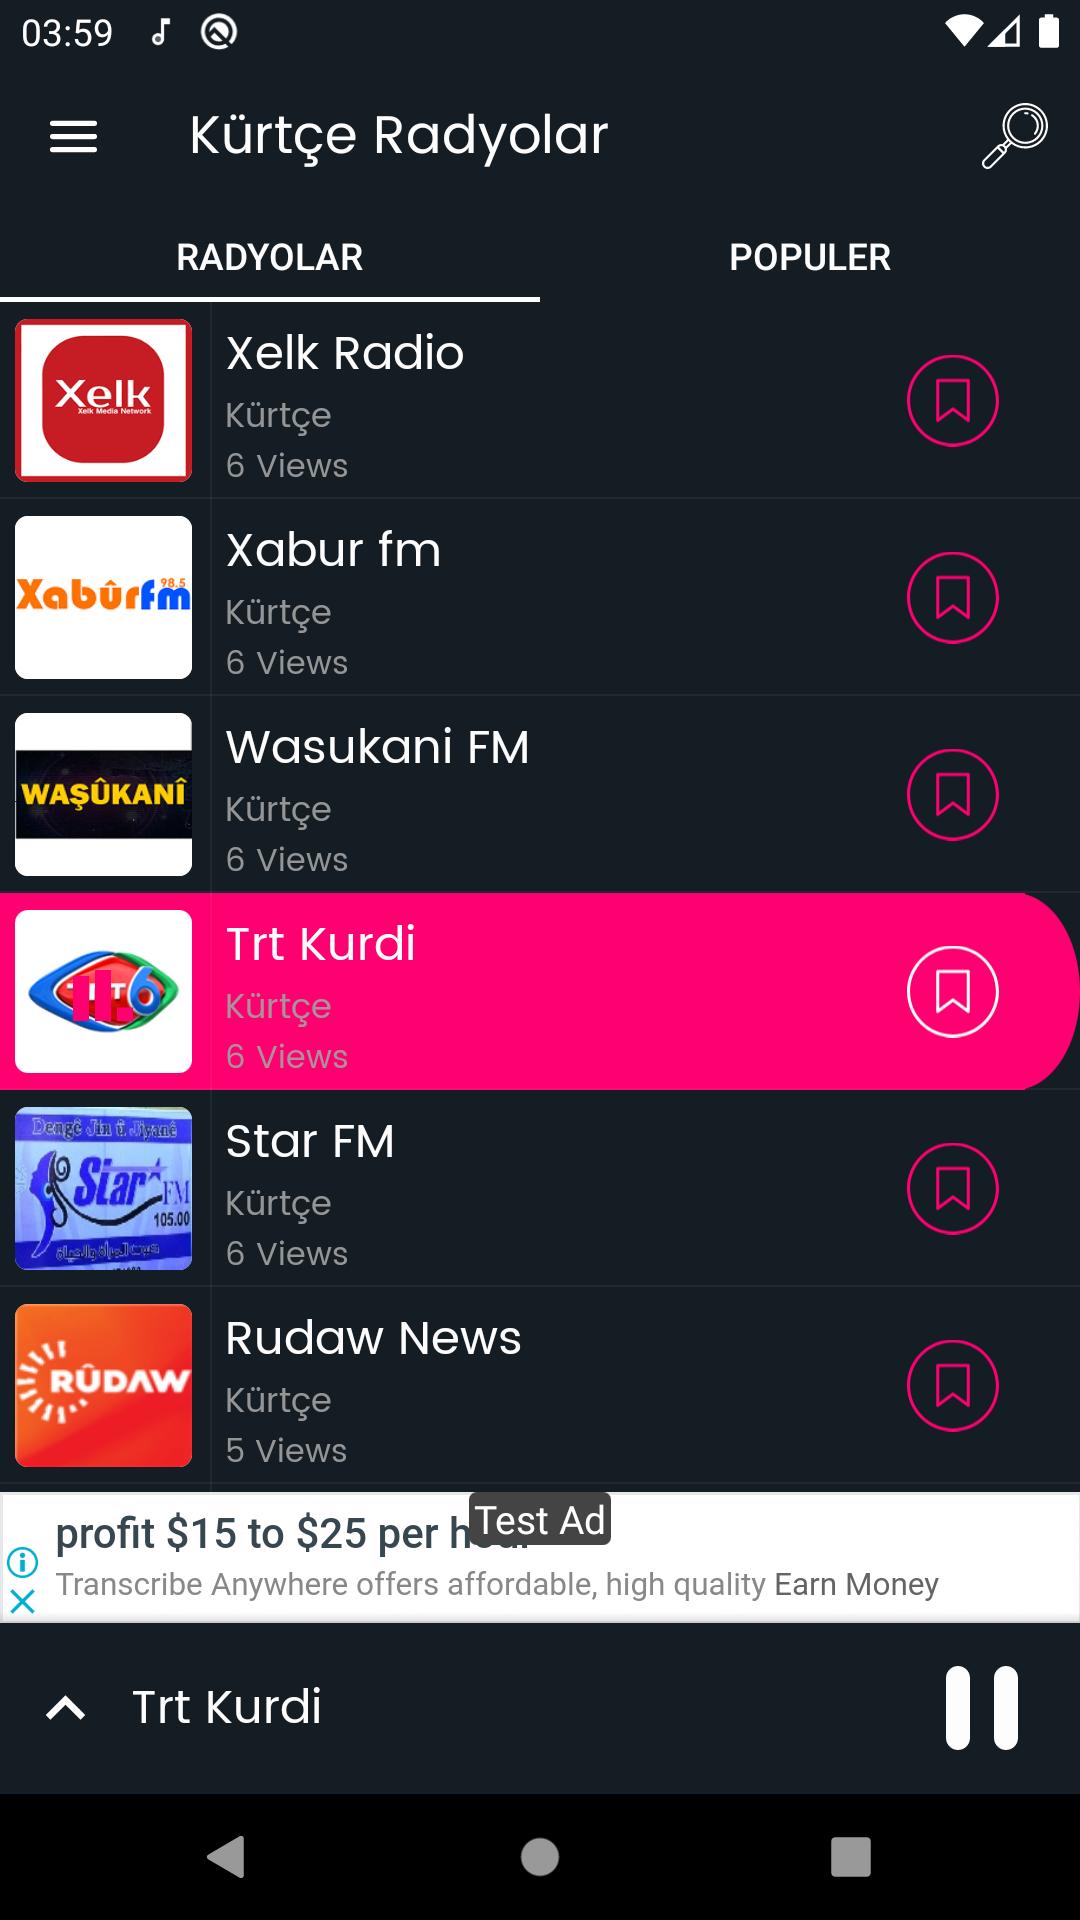 Kürtçe Radyo & Kurtce Radyo APK for Android Download